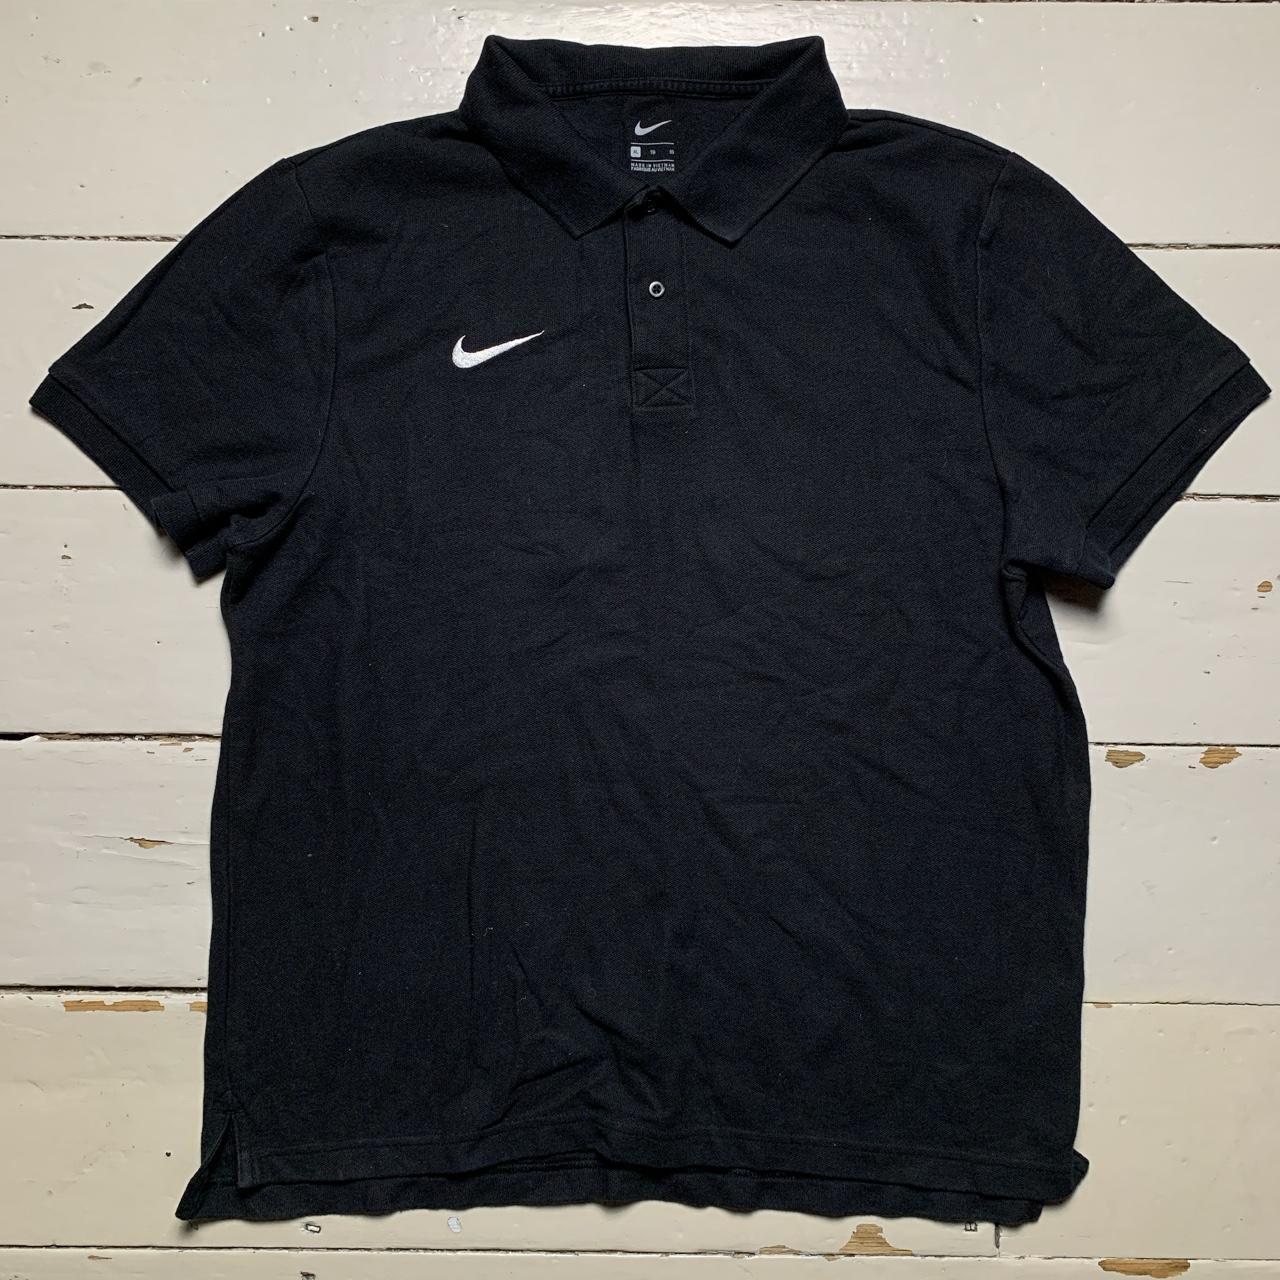 Nike Swoosh Black and White Polo Shirt